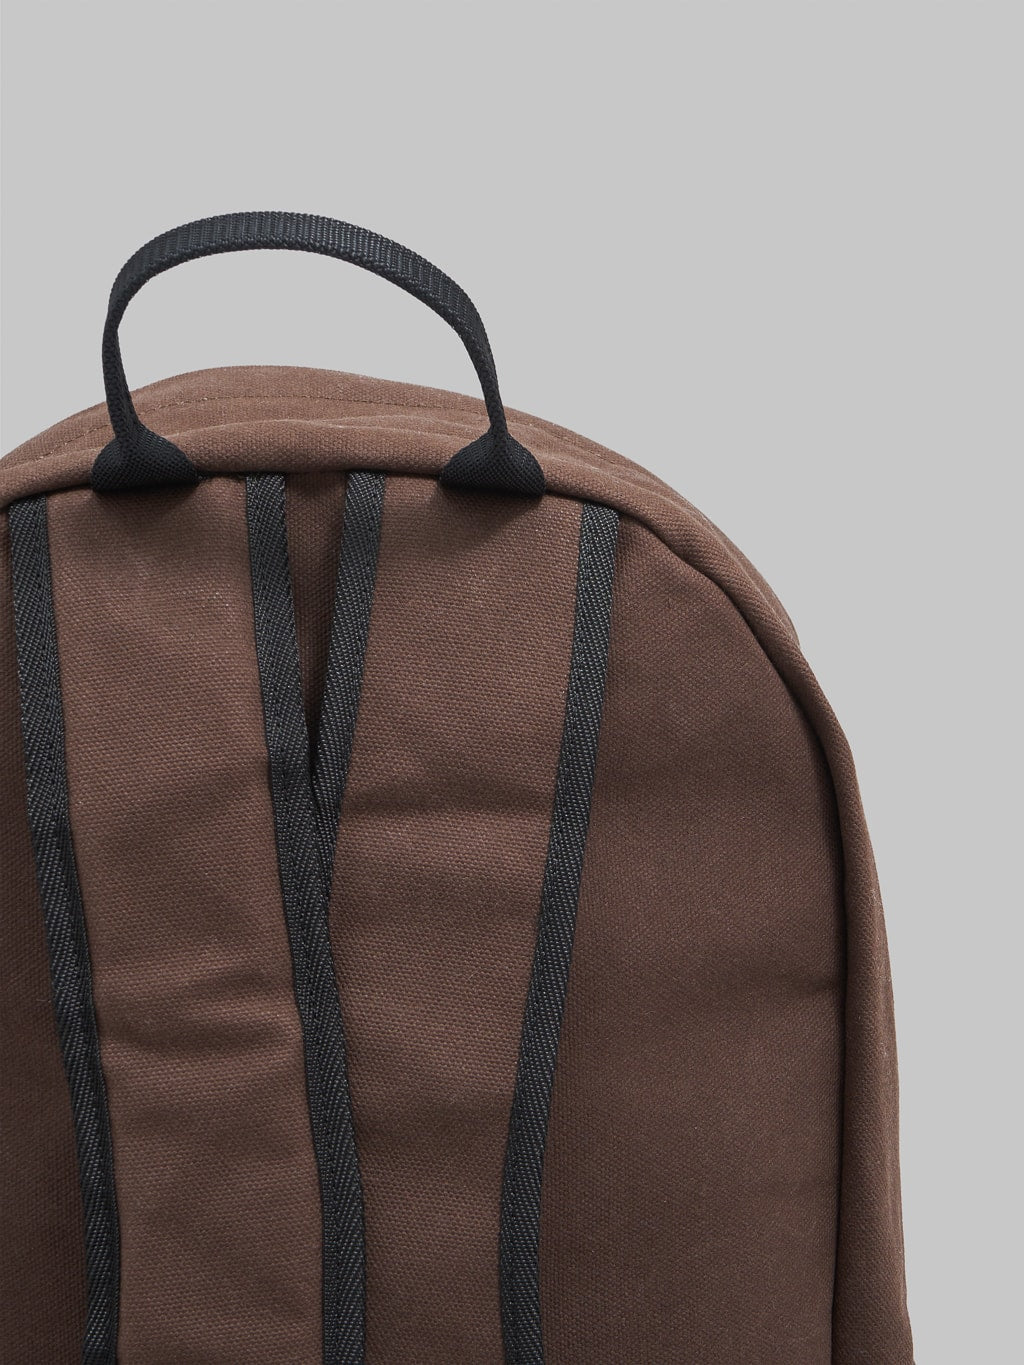 Kobashi Studio Standard Backpack Brown shoulder